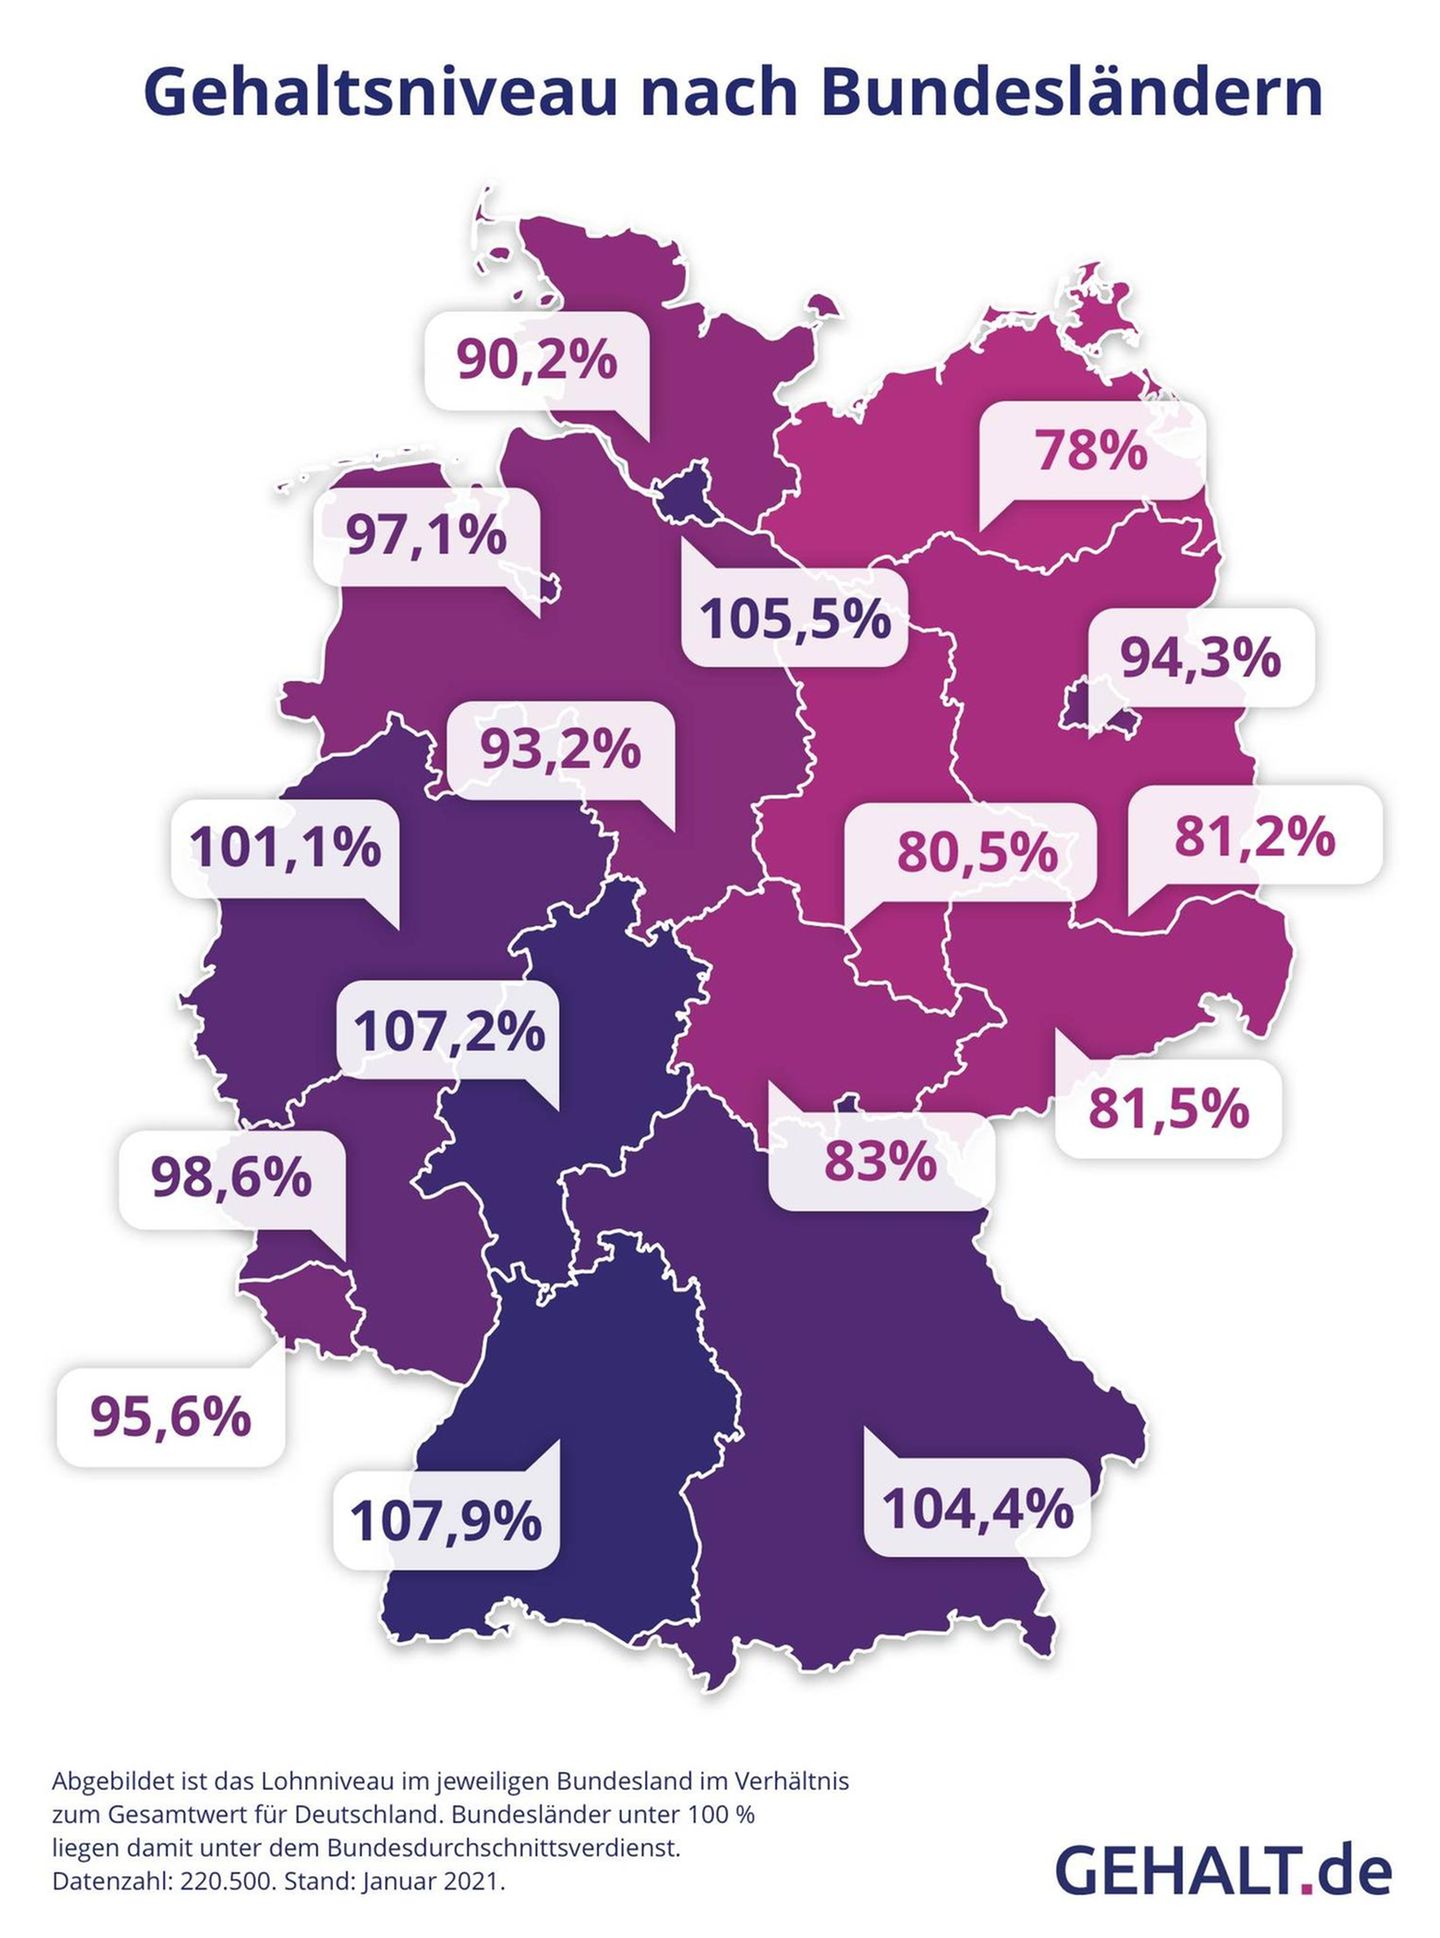 2021: Einkommen: So ist das Gehaltsgefälle in Deutschland - Capital.de